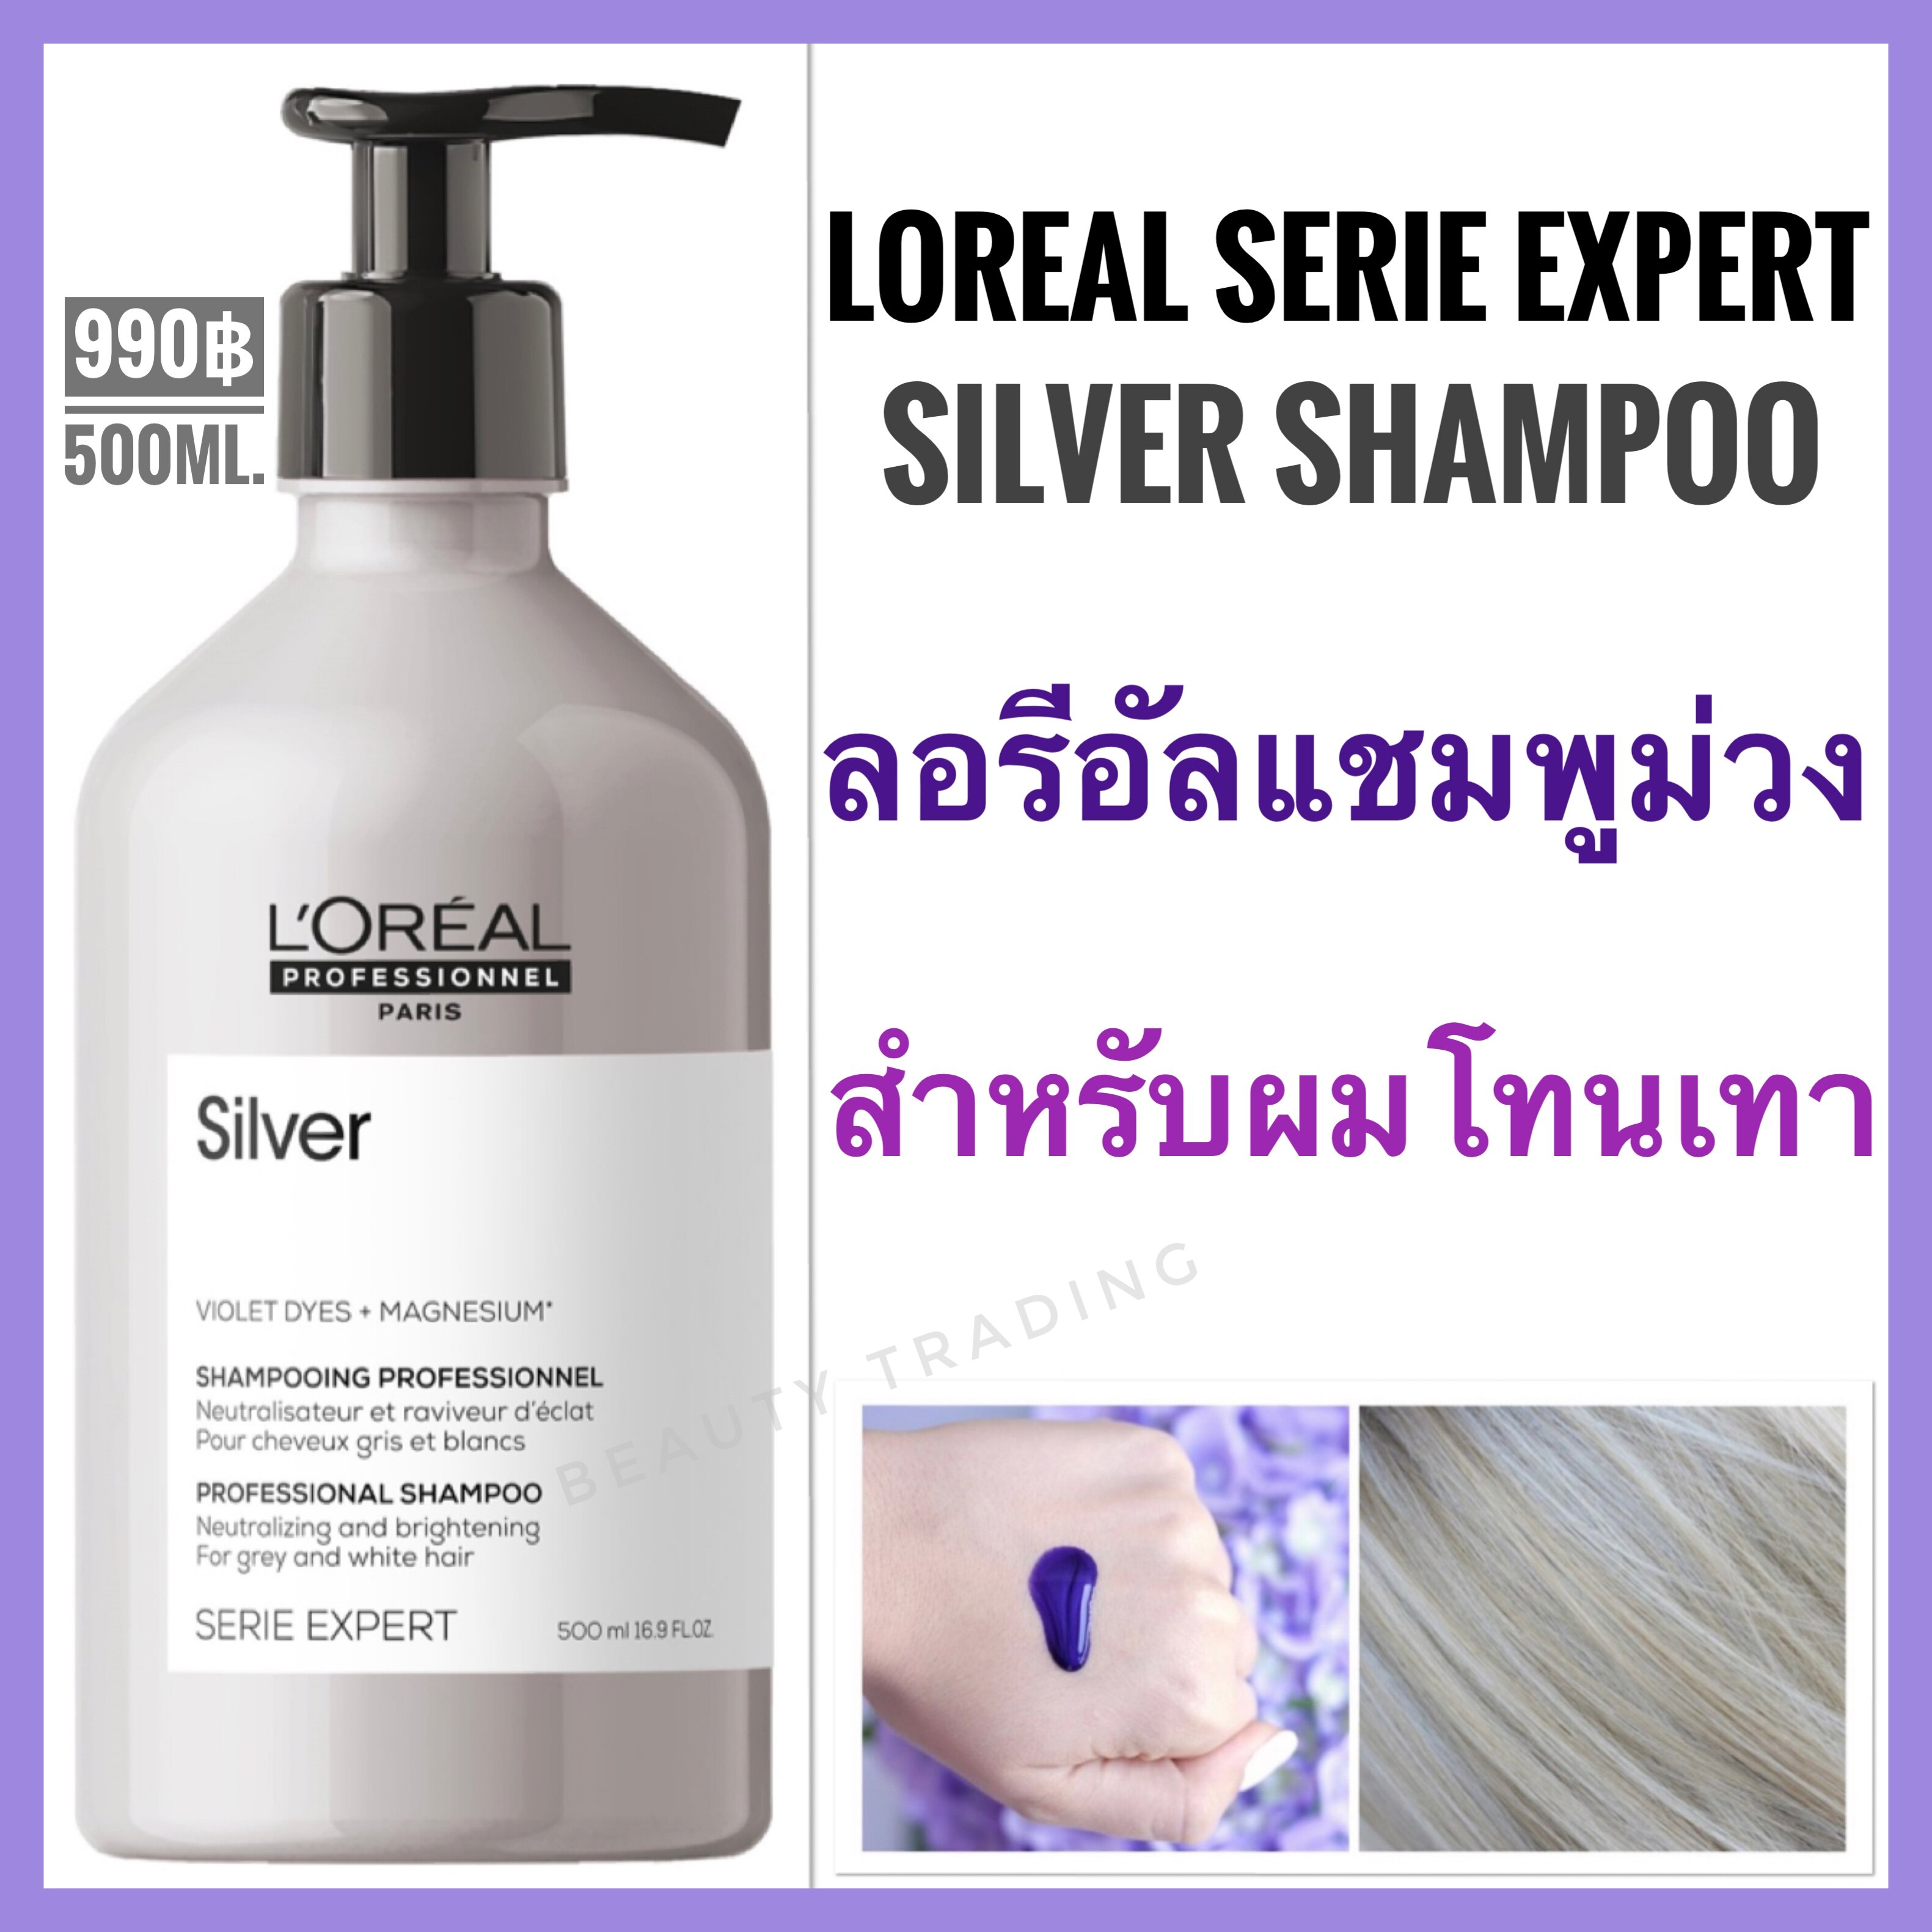 ราคา แชมพูม่วงผมโทนเทาLoreal Serie Expert Silver Shampoo 500ml. ลอรีอัล แชมพูม่วง สำหรับผมโทนเทา Loreal silver